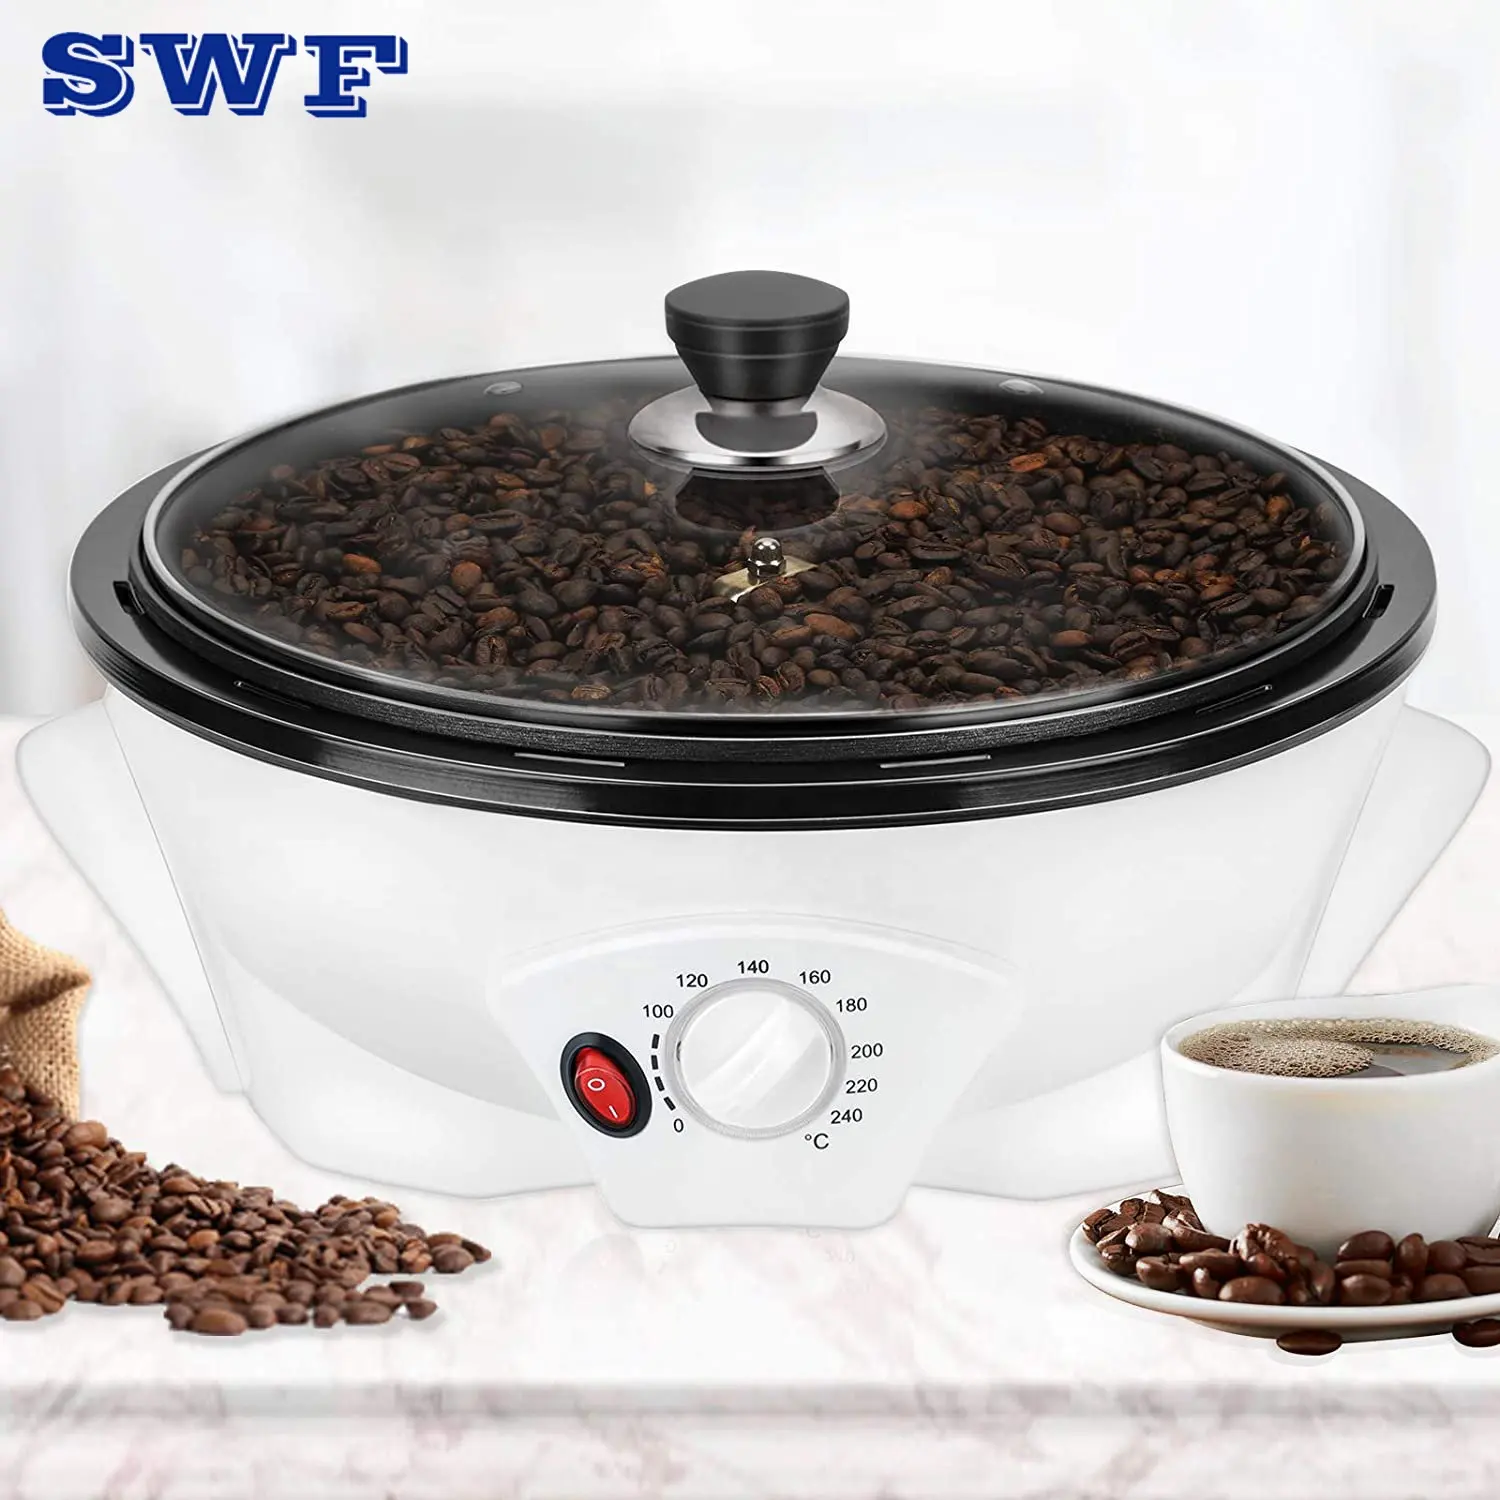 110V kahve çekirdeği kavurma pişirme makinesi/ev kullanımı için yapışmaz elektrikli kahve kavurma